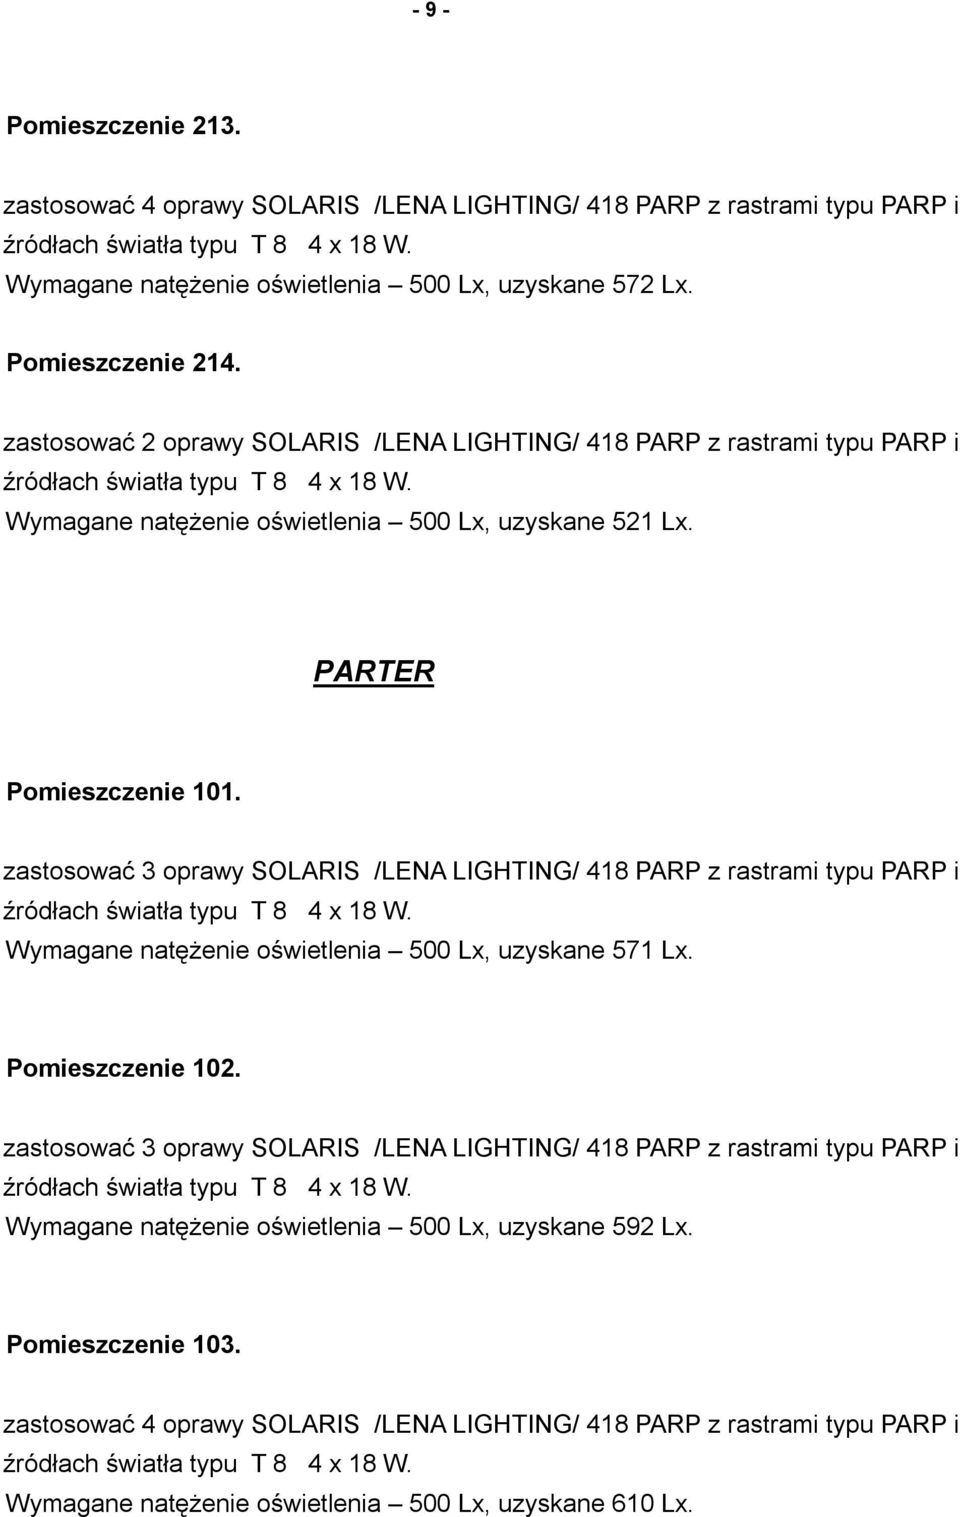 zastosować 3 oprawy SOLARIS /LENA LIGHTING/ 418 PARP z rastrami typu PARP i Wymagane natężenie oświetlenia 500 Lx, uzyskane 571 Lx. Pomieszczenie 102.